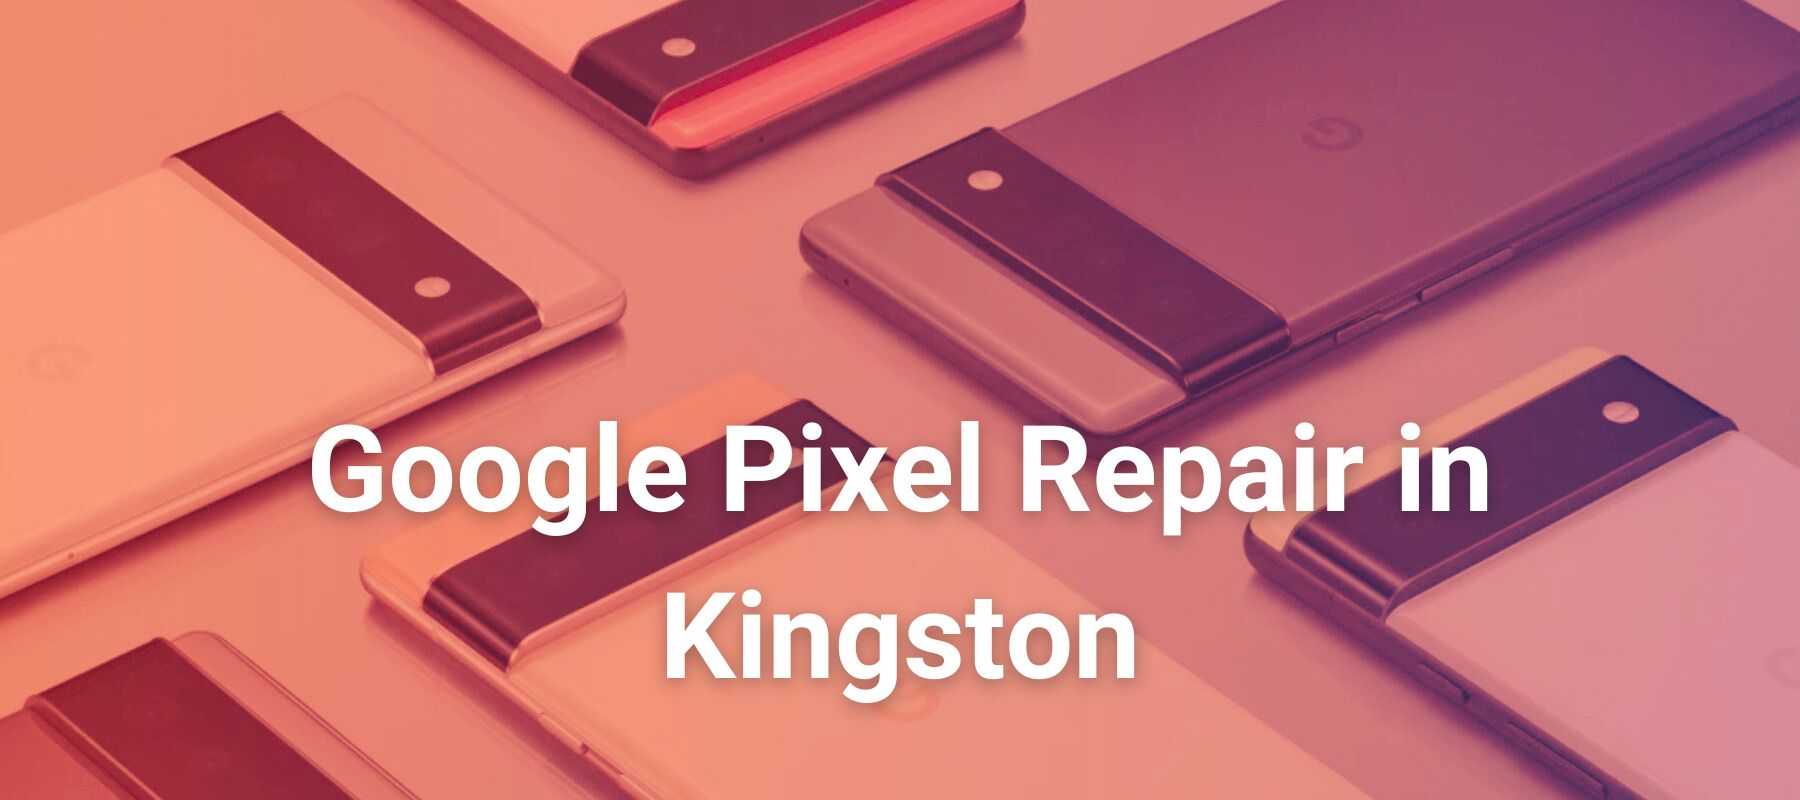 Google Pixel Repair in Kingston